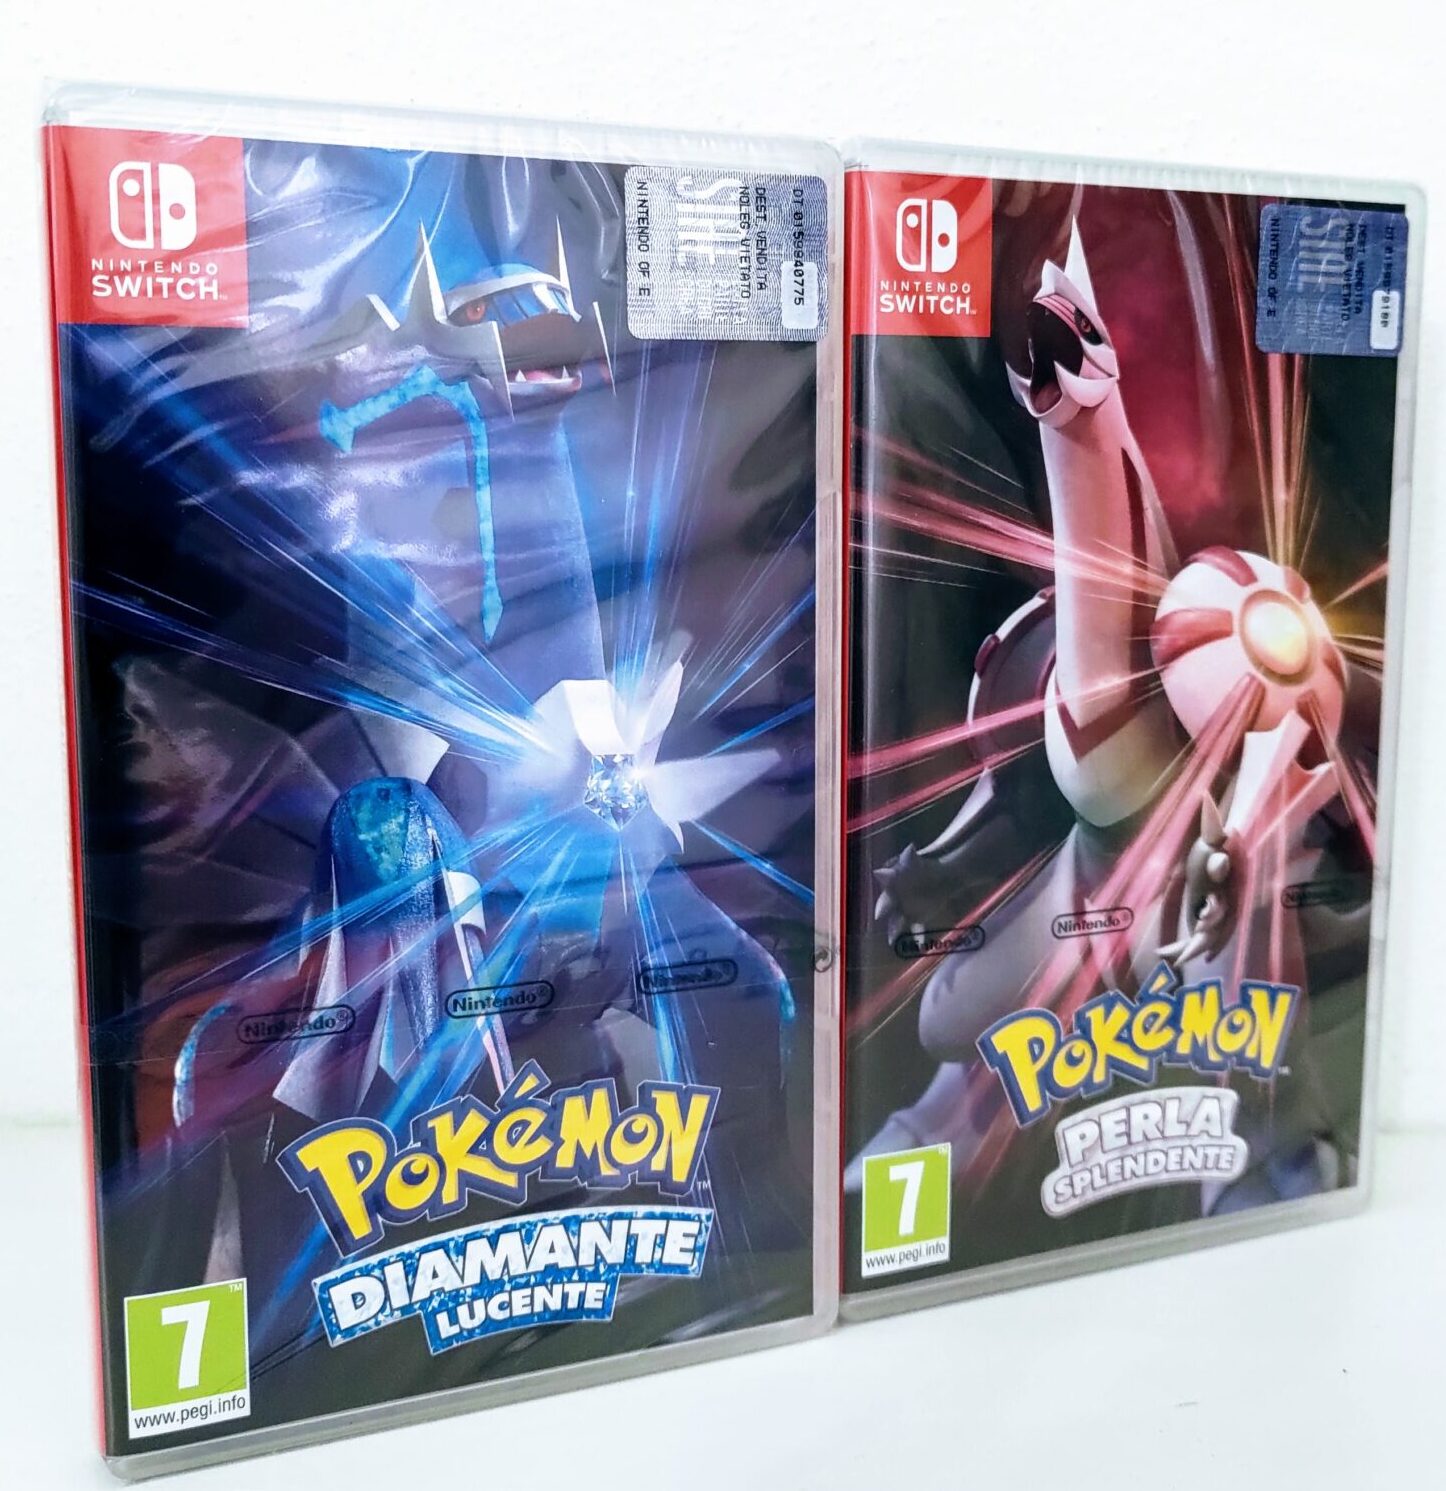 Pokémon Diamante Lucente e Pokémon Perla Splendente, presentazione frontale dei giochi